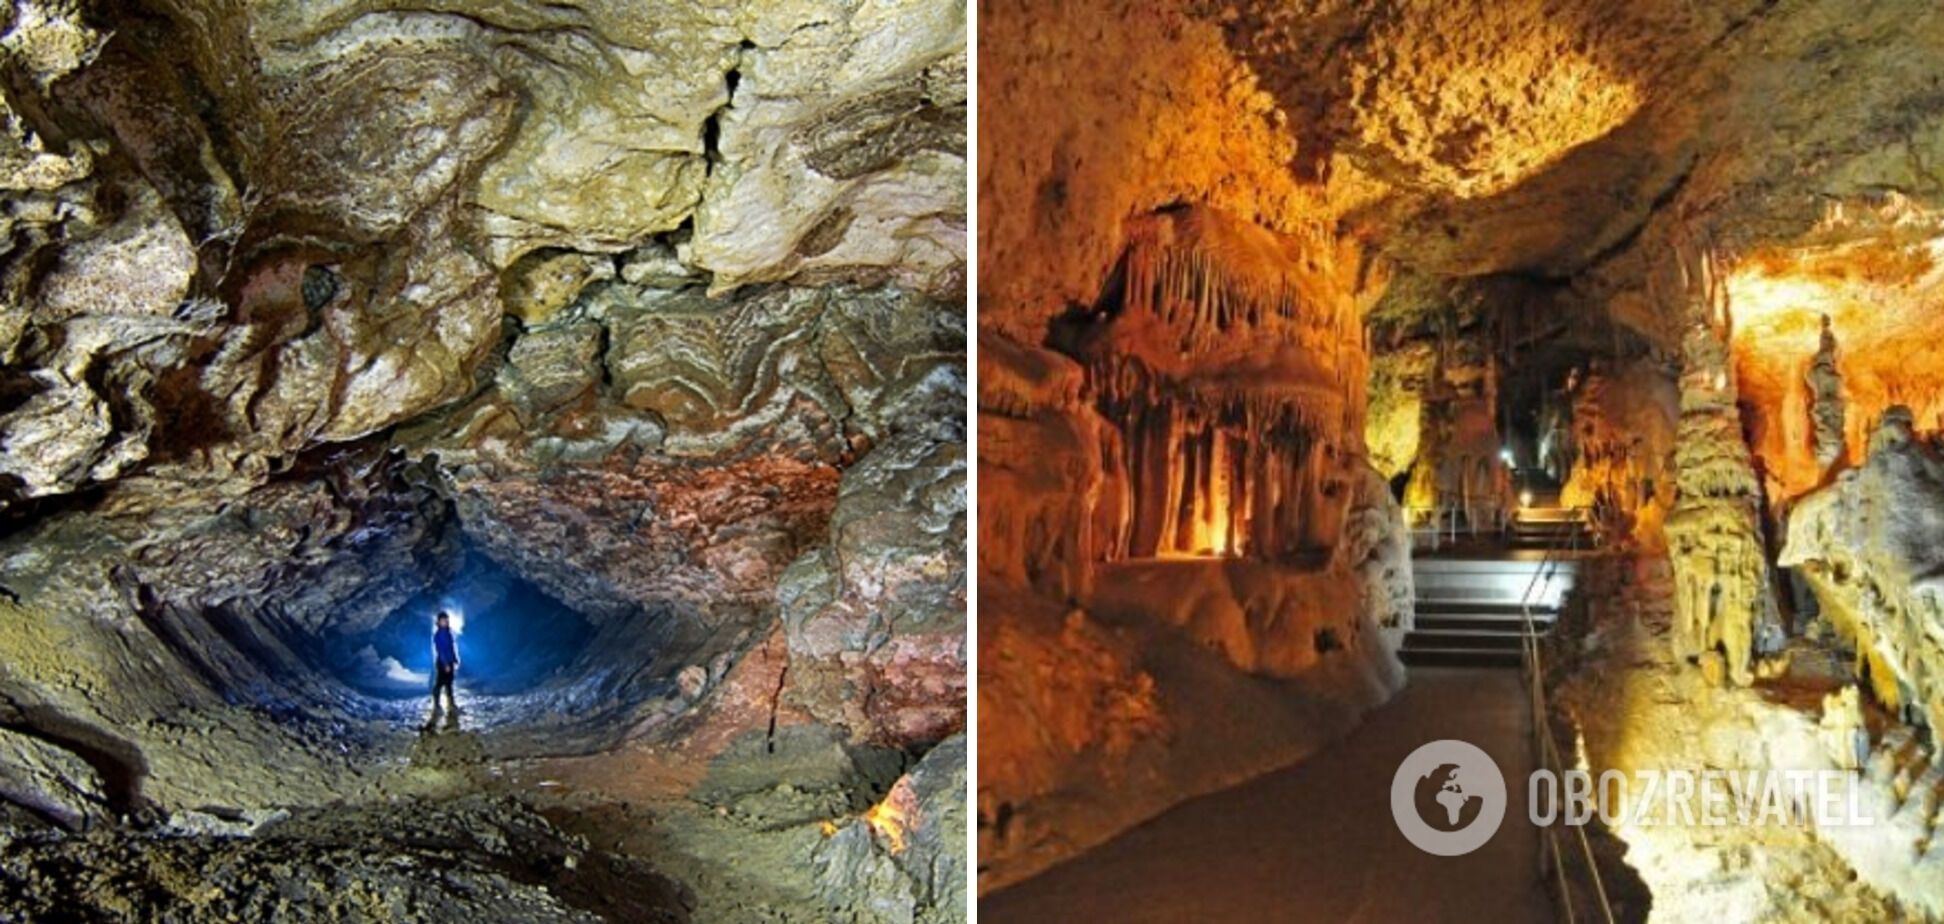 Оптимистическая пещера образовалась в результате растворения водами гипсов неогенового периода.